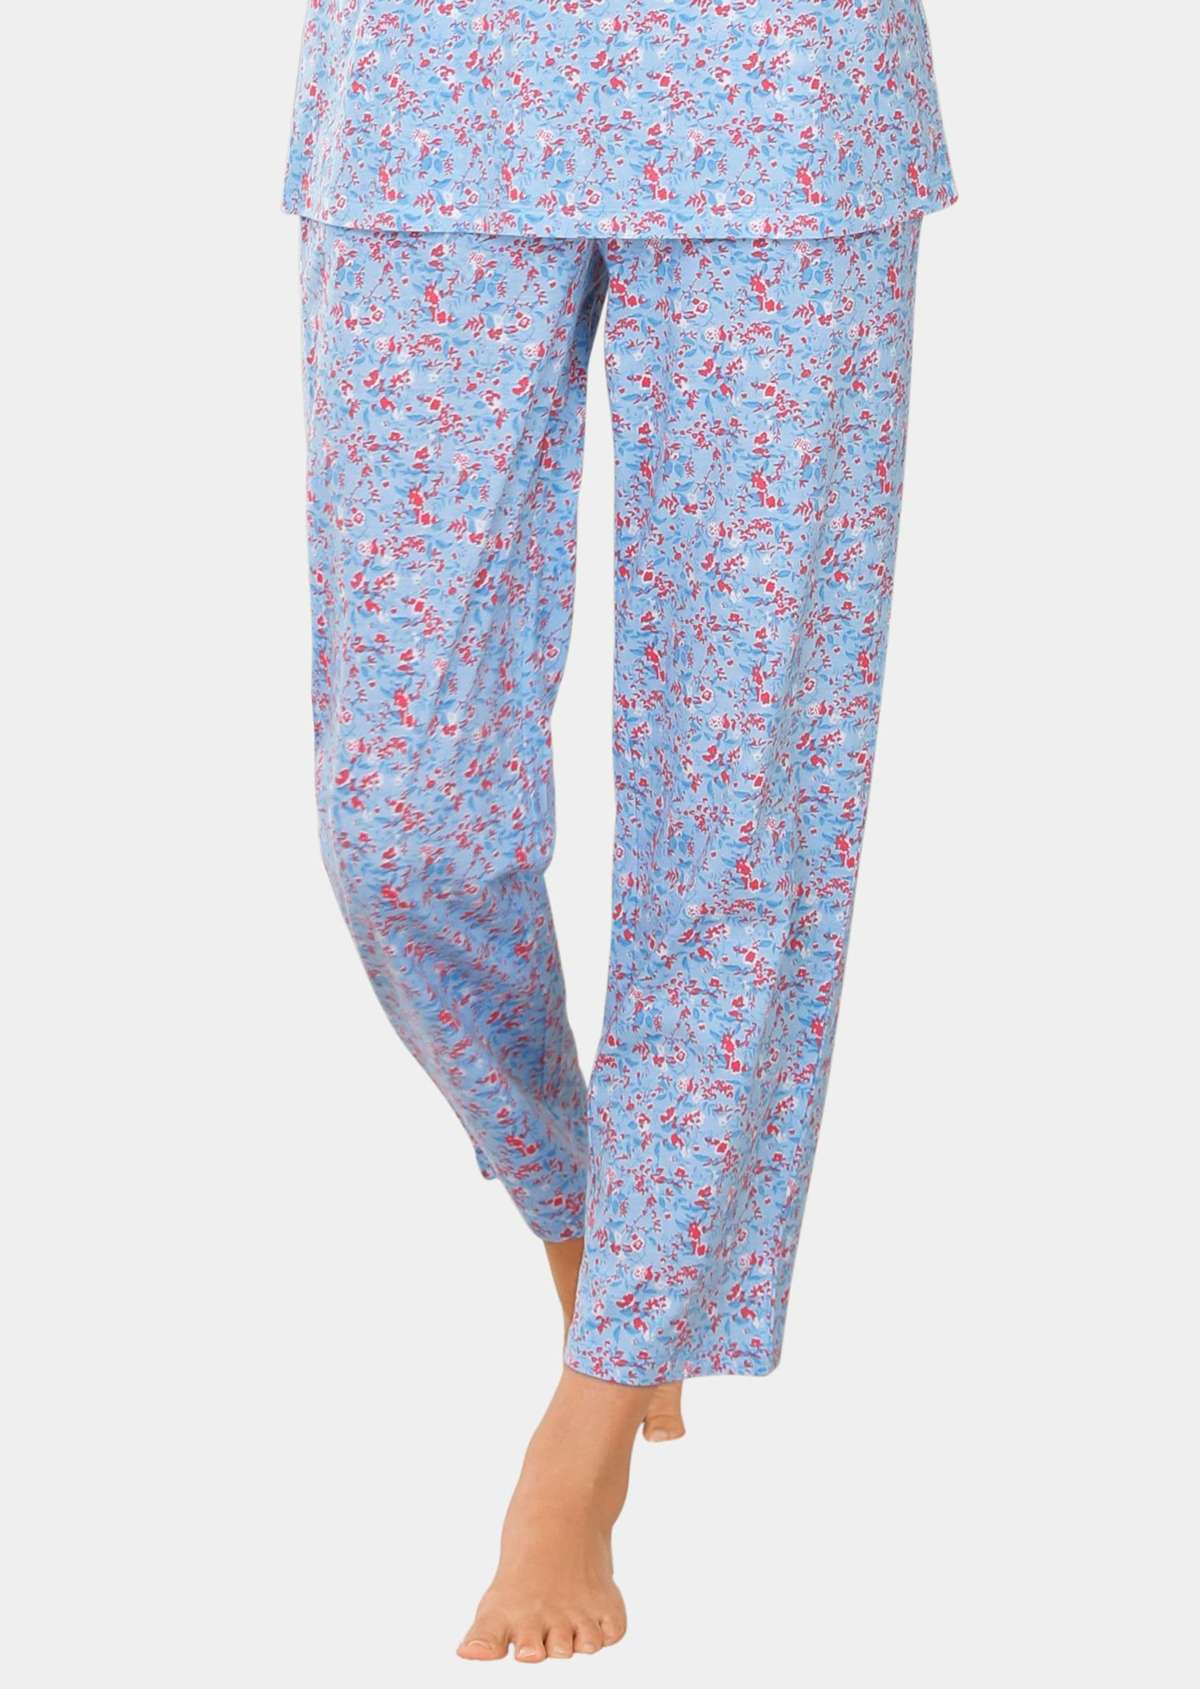 Пижамные штаны с цветочным принтом Mix&Match